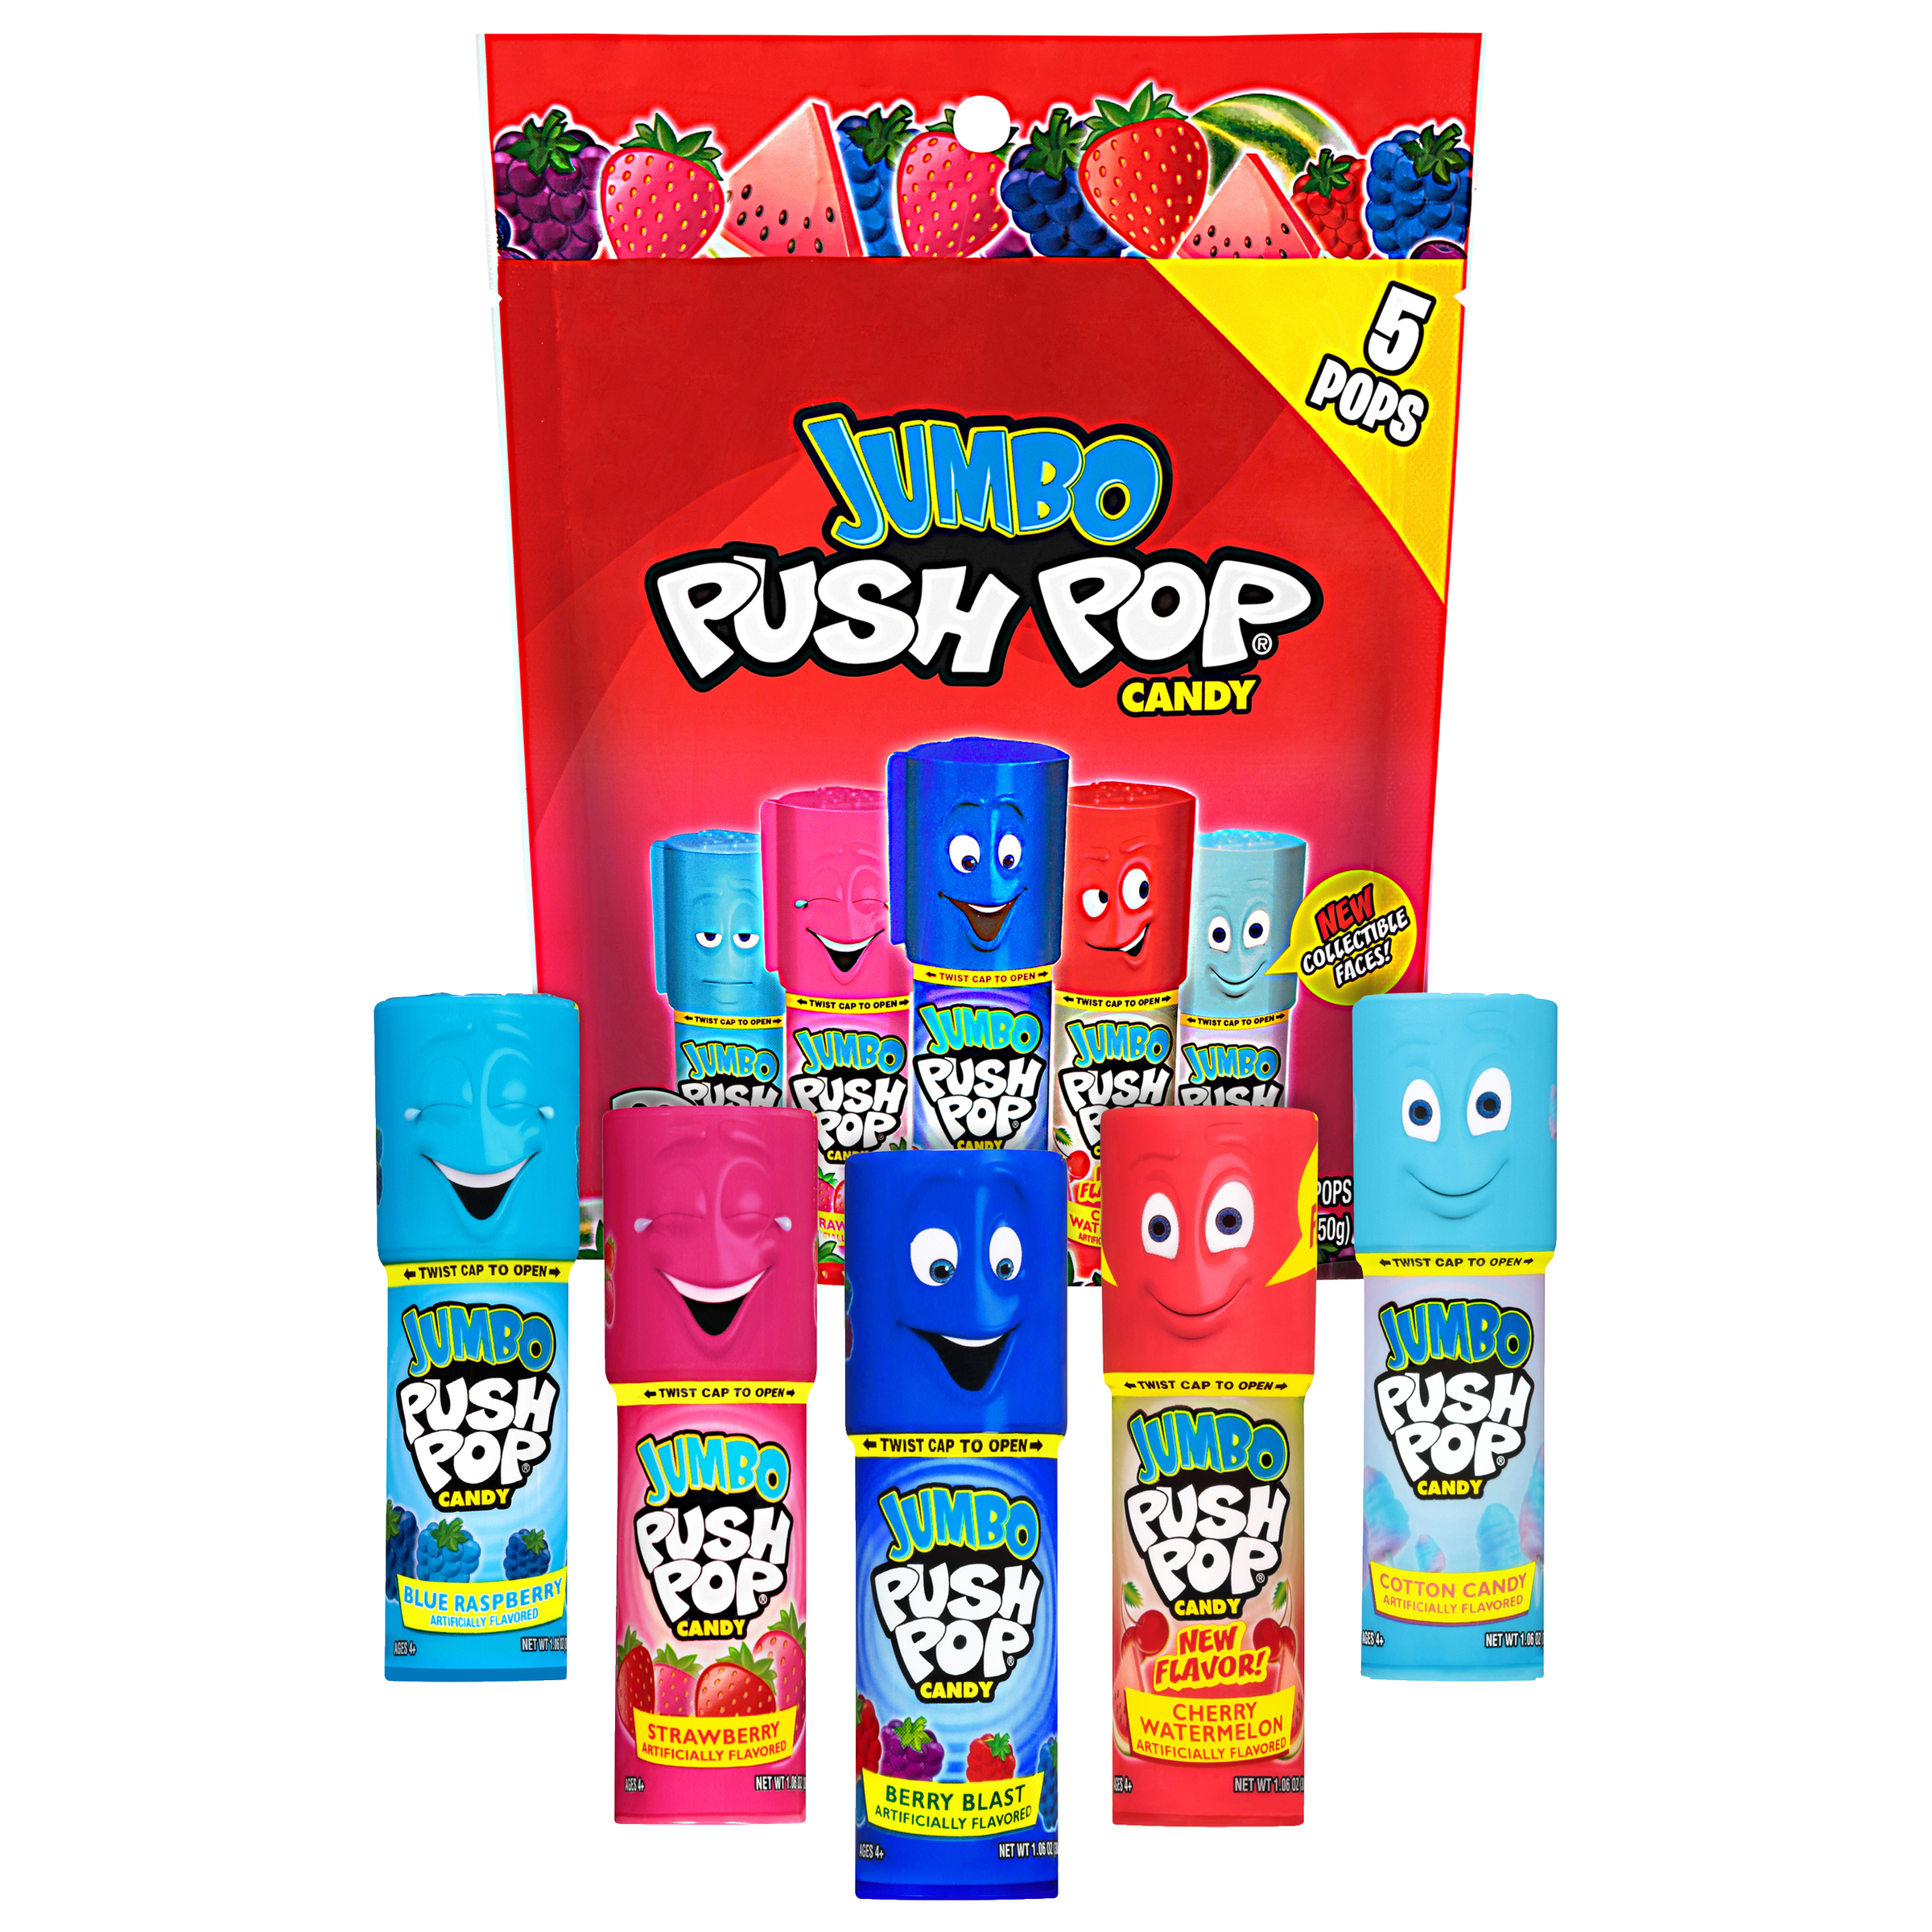 Jumbo Push Pop,Gluten-Free, Assorted Flavors Lollipops, 5.3 oz, 5 Count Bag - image 5 of 10